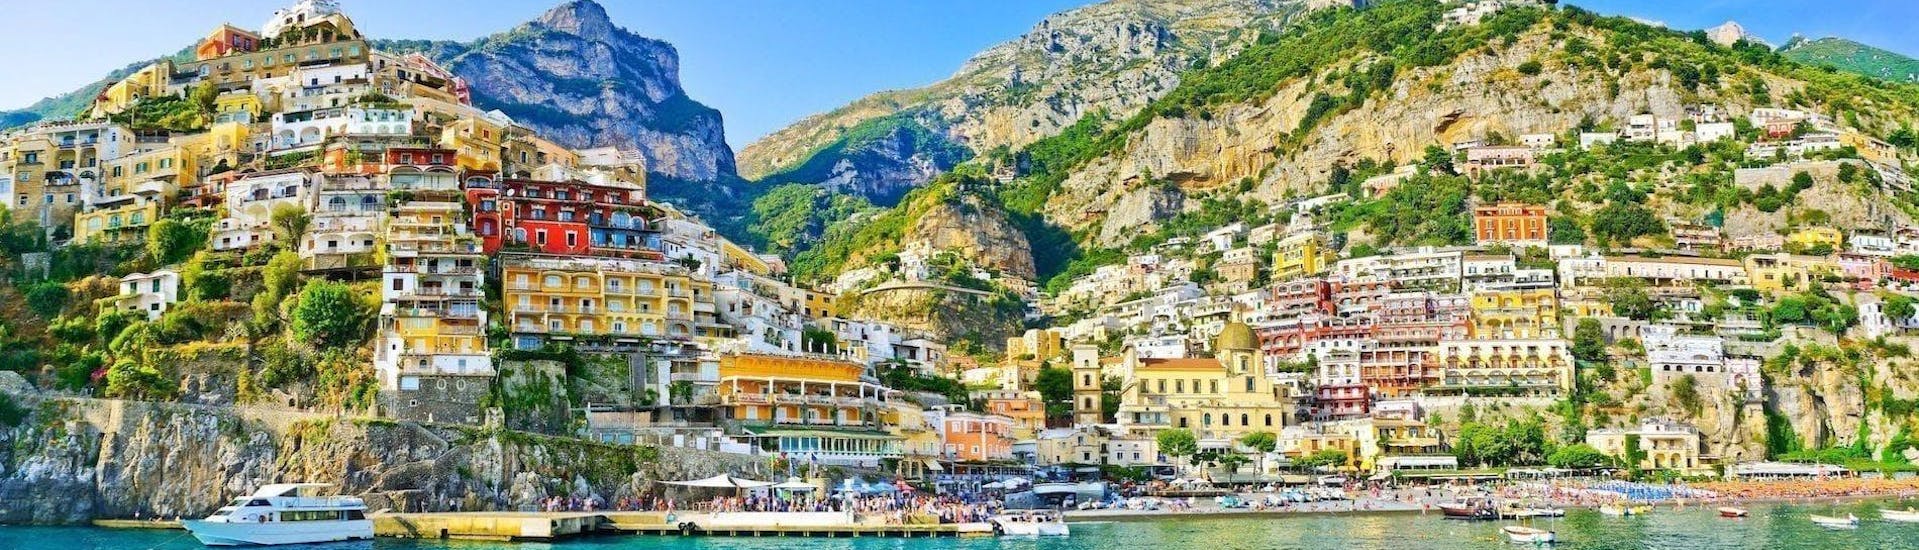 La vista di Amalfi dal mare è uno dei punti salienti di questa gita in barca privata da Sorrento a Positano e Amalfi.